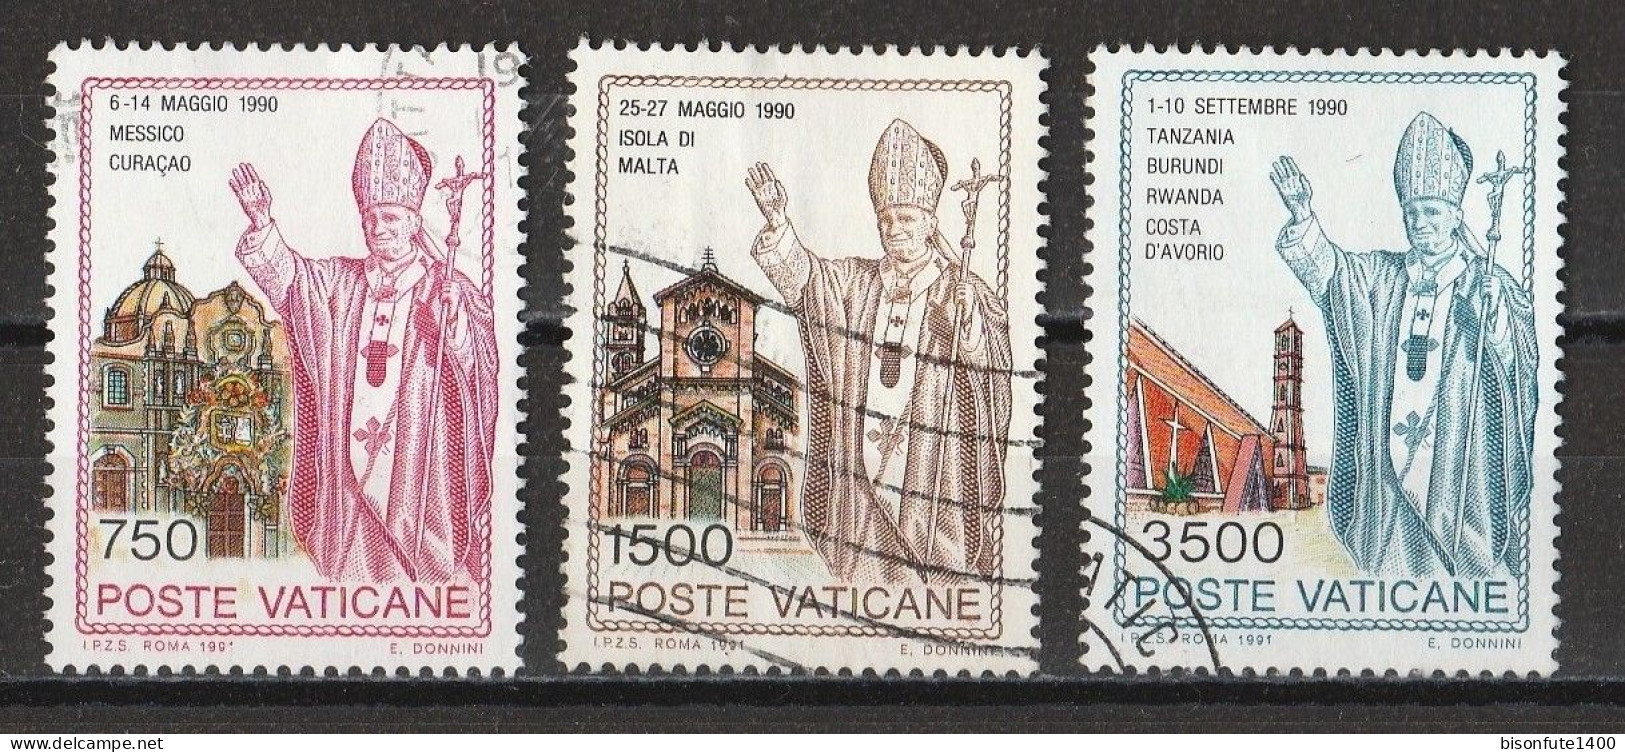 Vatican 1991 : Timbres Yvert & Tellier N° 904 - 905 - 906 - 907 - 908 - 916 - 917 Et 918 Oblitérés. - Gebruikt